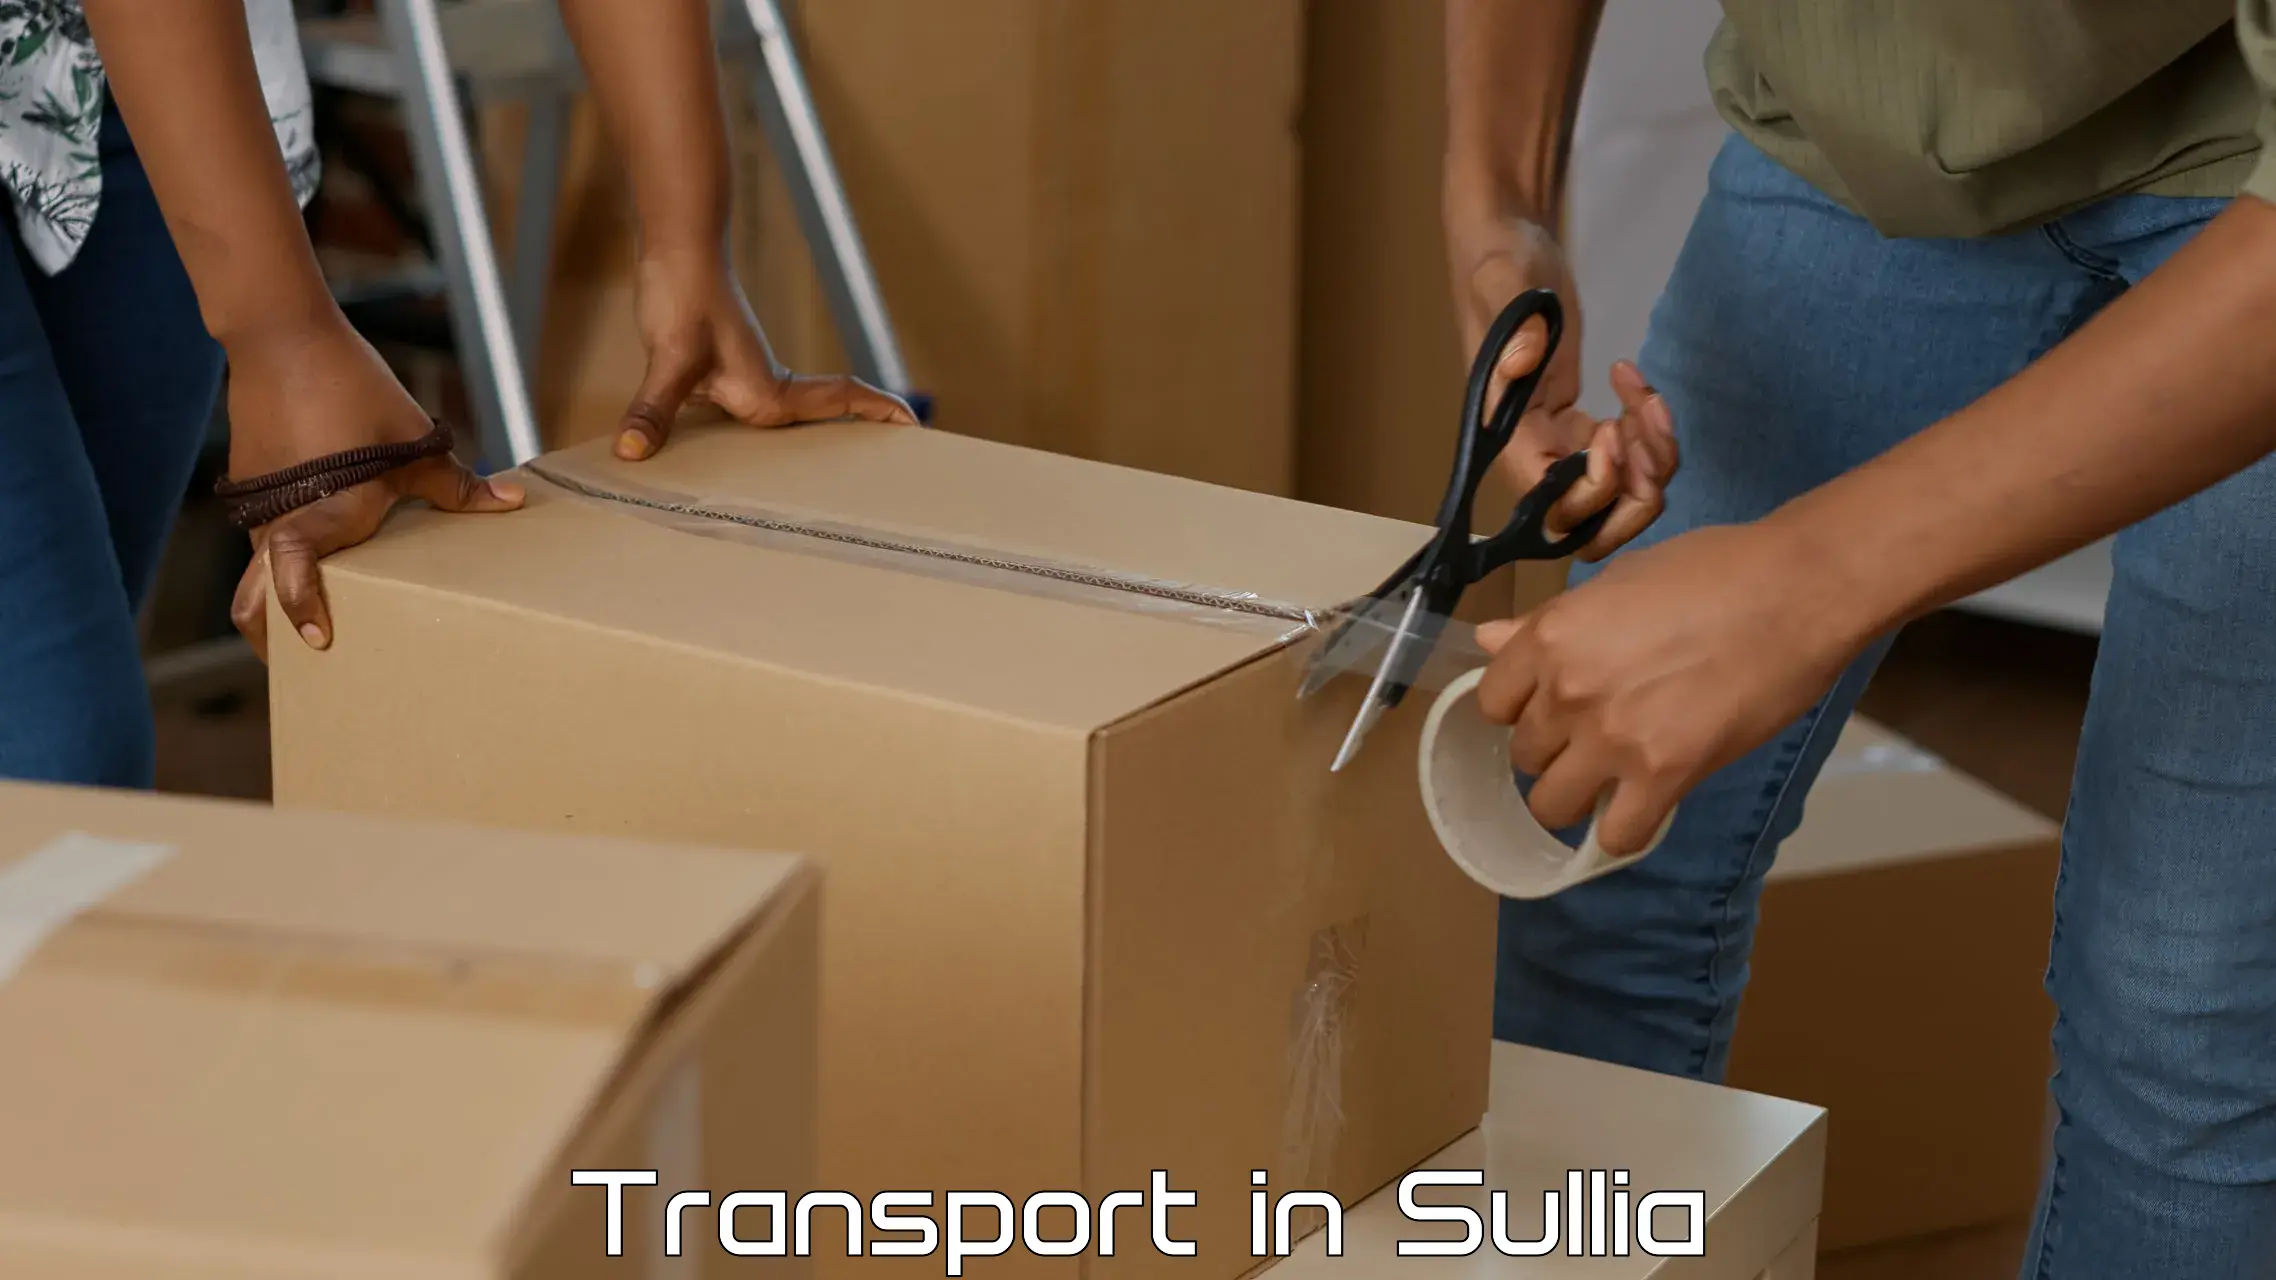 Air cargo transport services in Sullia